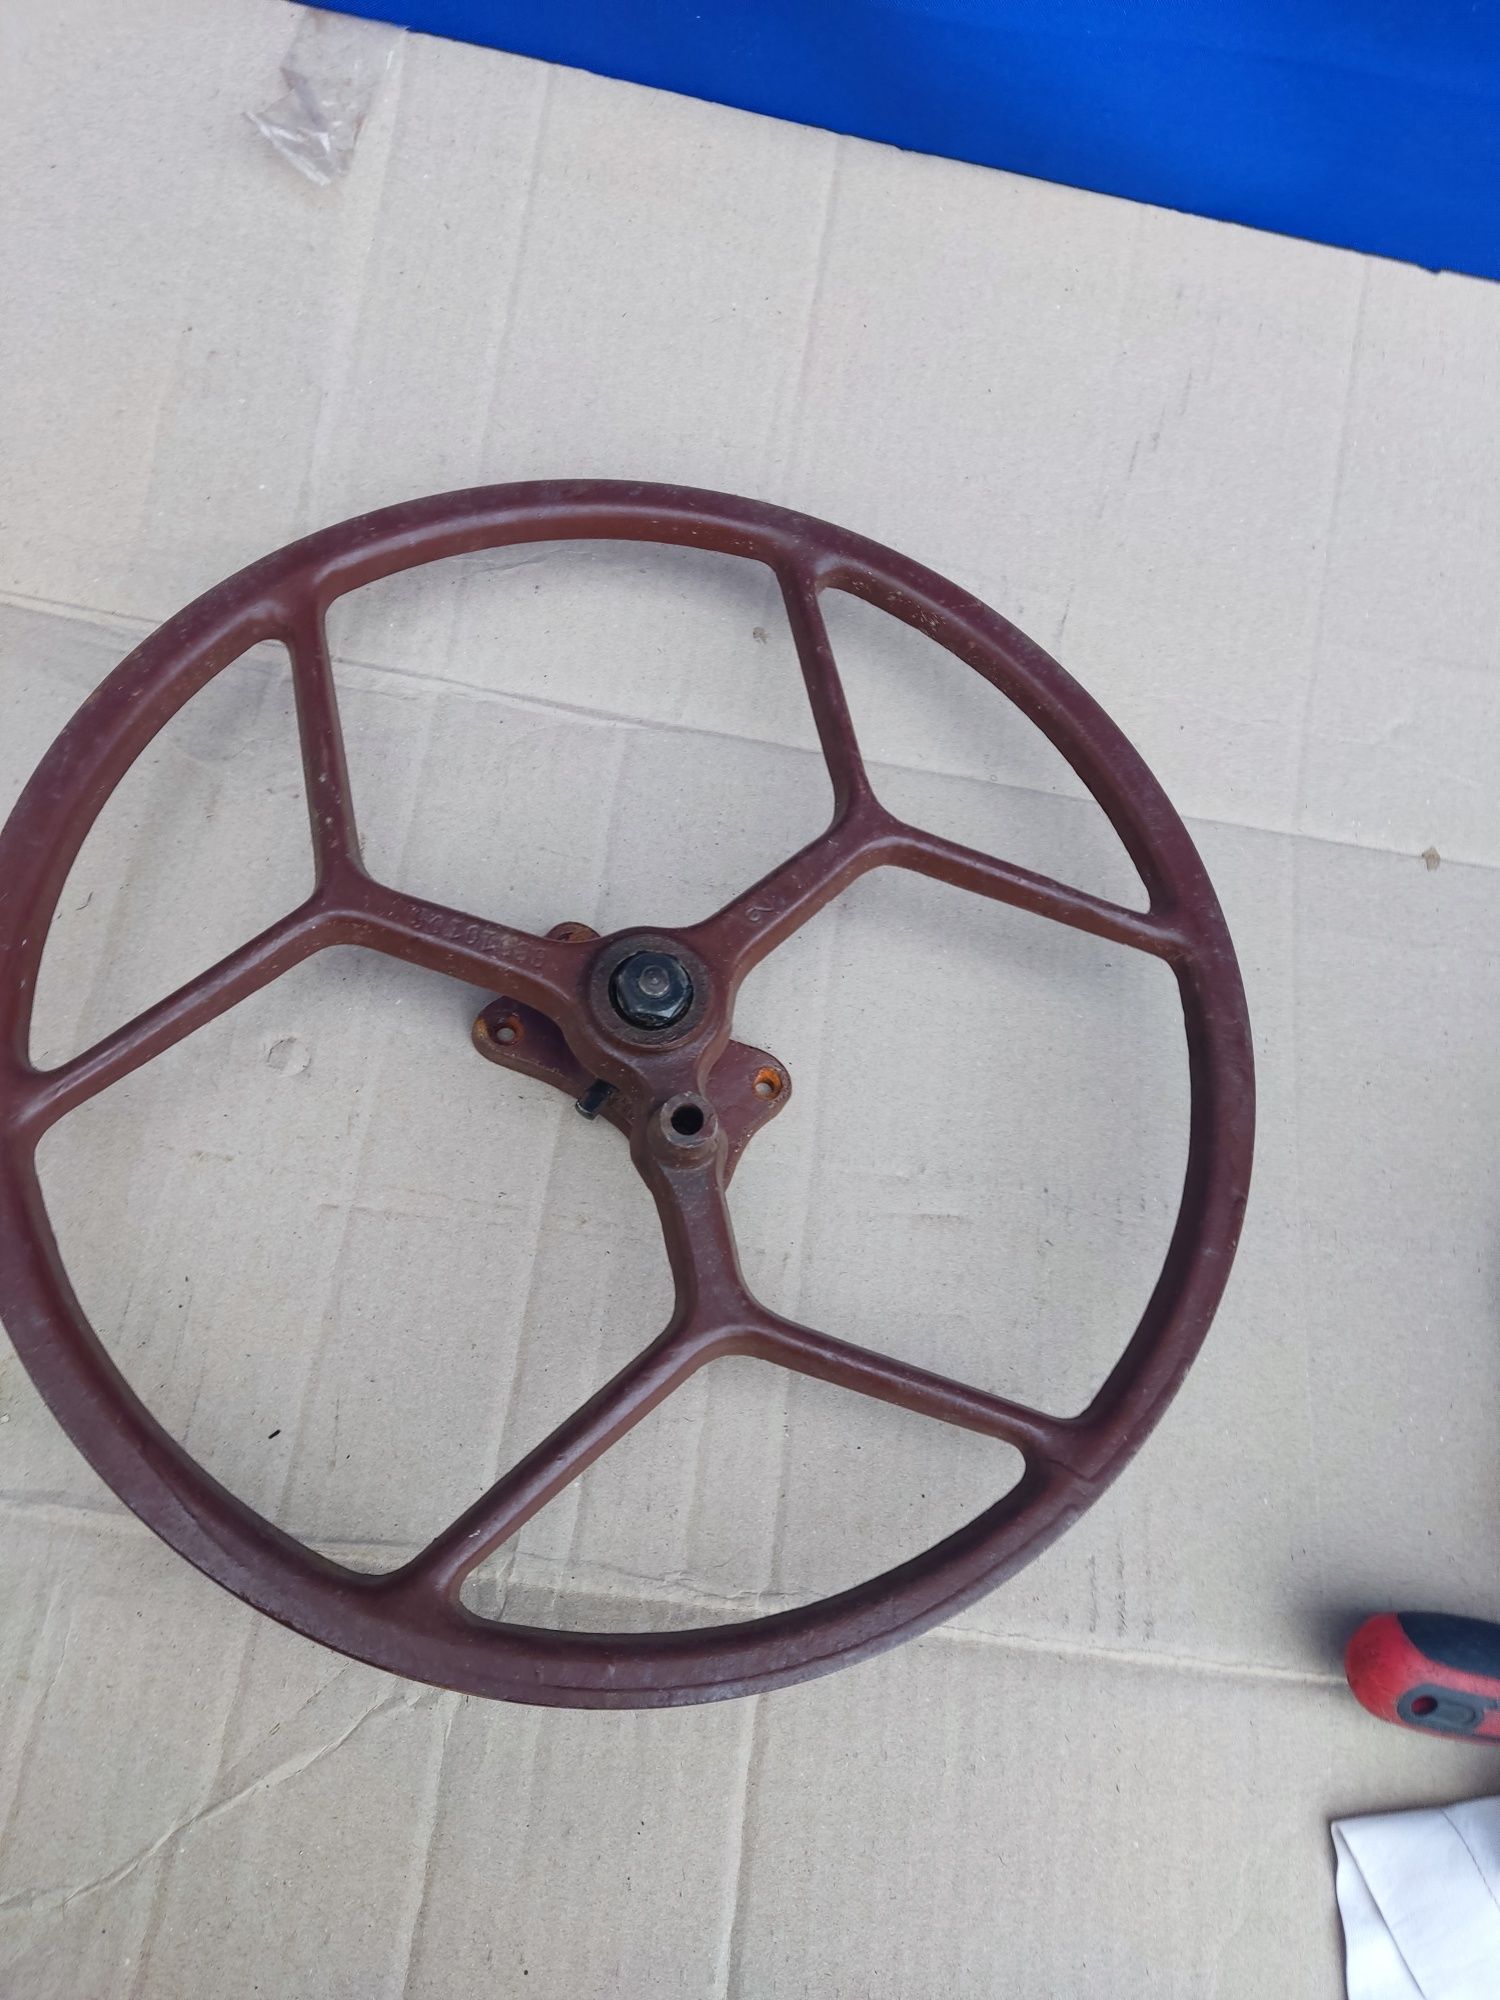 Алюминиевый  шкиф колесо от ножной швейной машинкой СССР диаметр 33 см